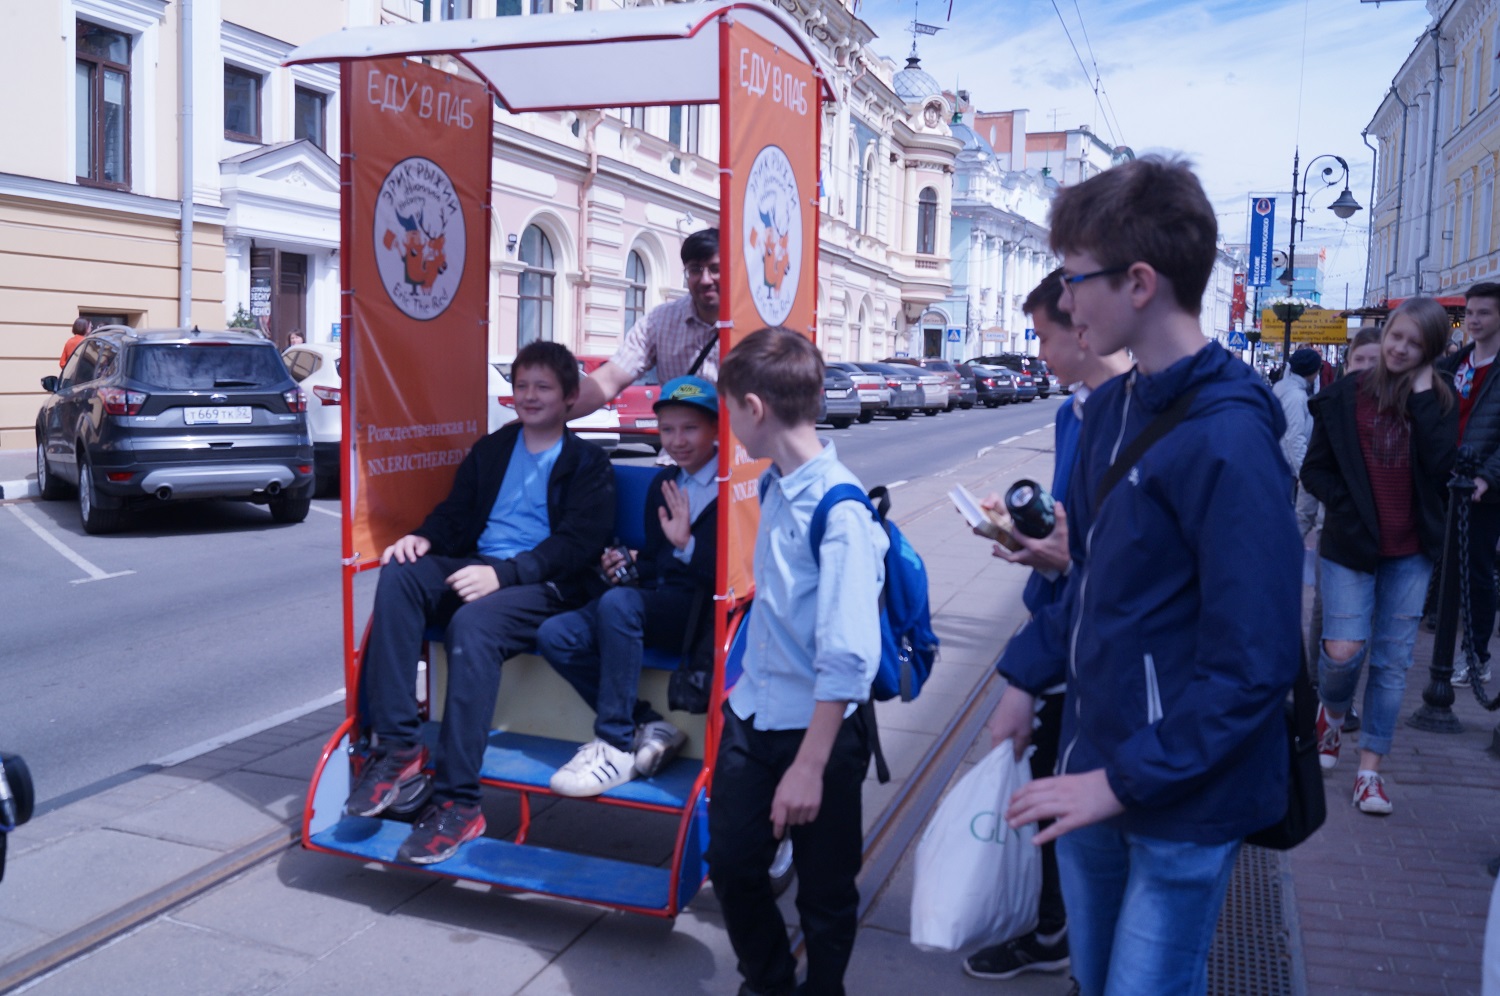 Велорикши и сухой борщ: новые развлечения в Нижнем Новгороде